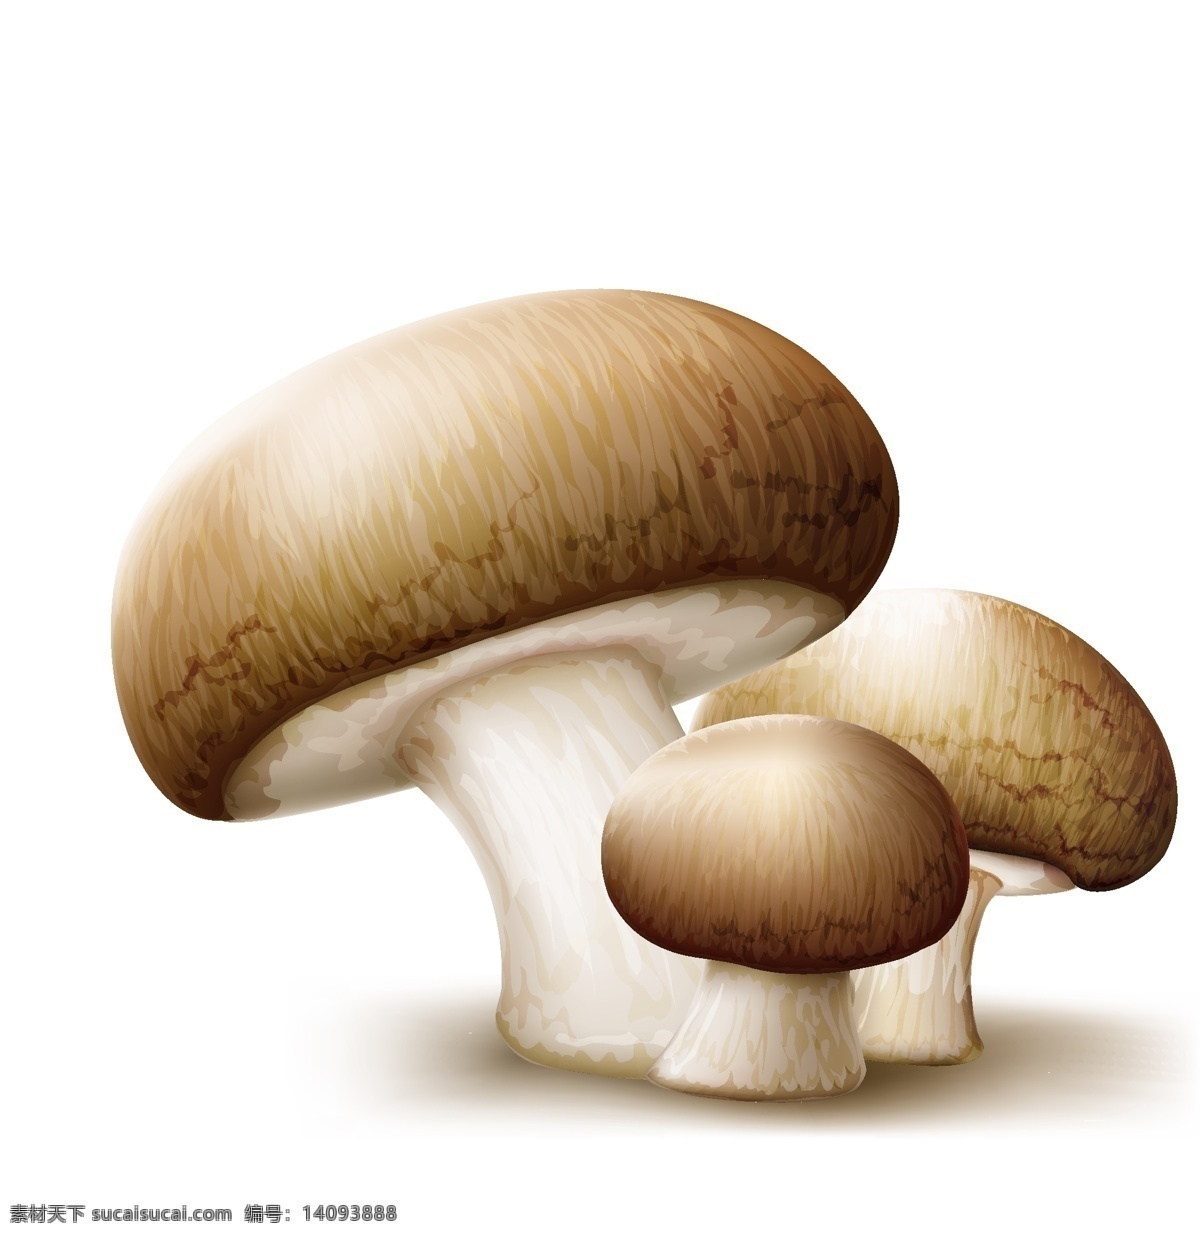 蘑菇 食物 蔬菜 卡通 矢量 绘画 蘑菇设计 矢量蘑菇 蘑菇素材 食物蔬菜 蔬菜水果 生物世界